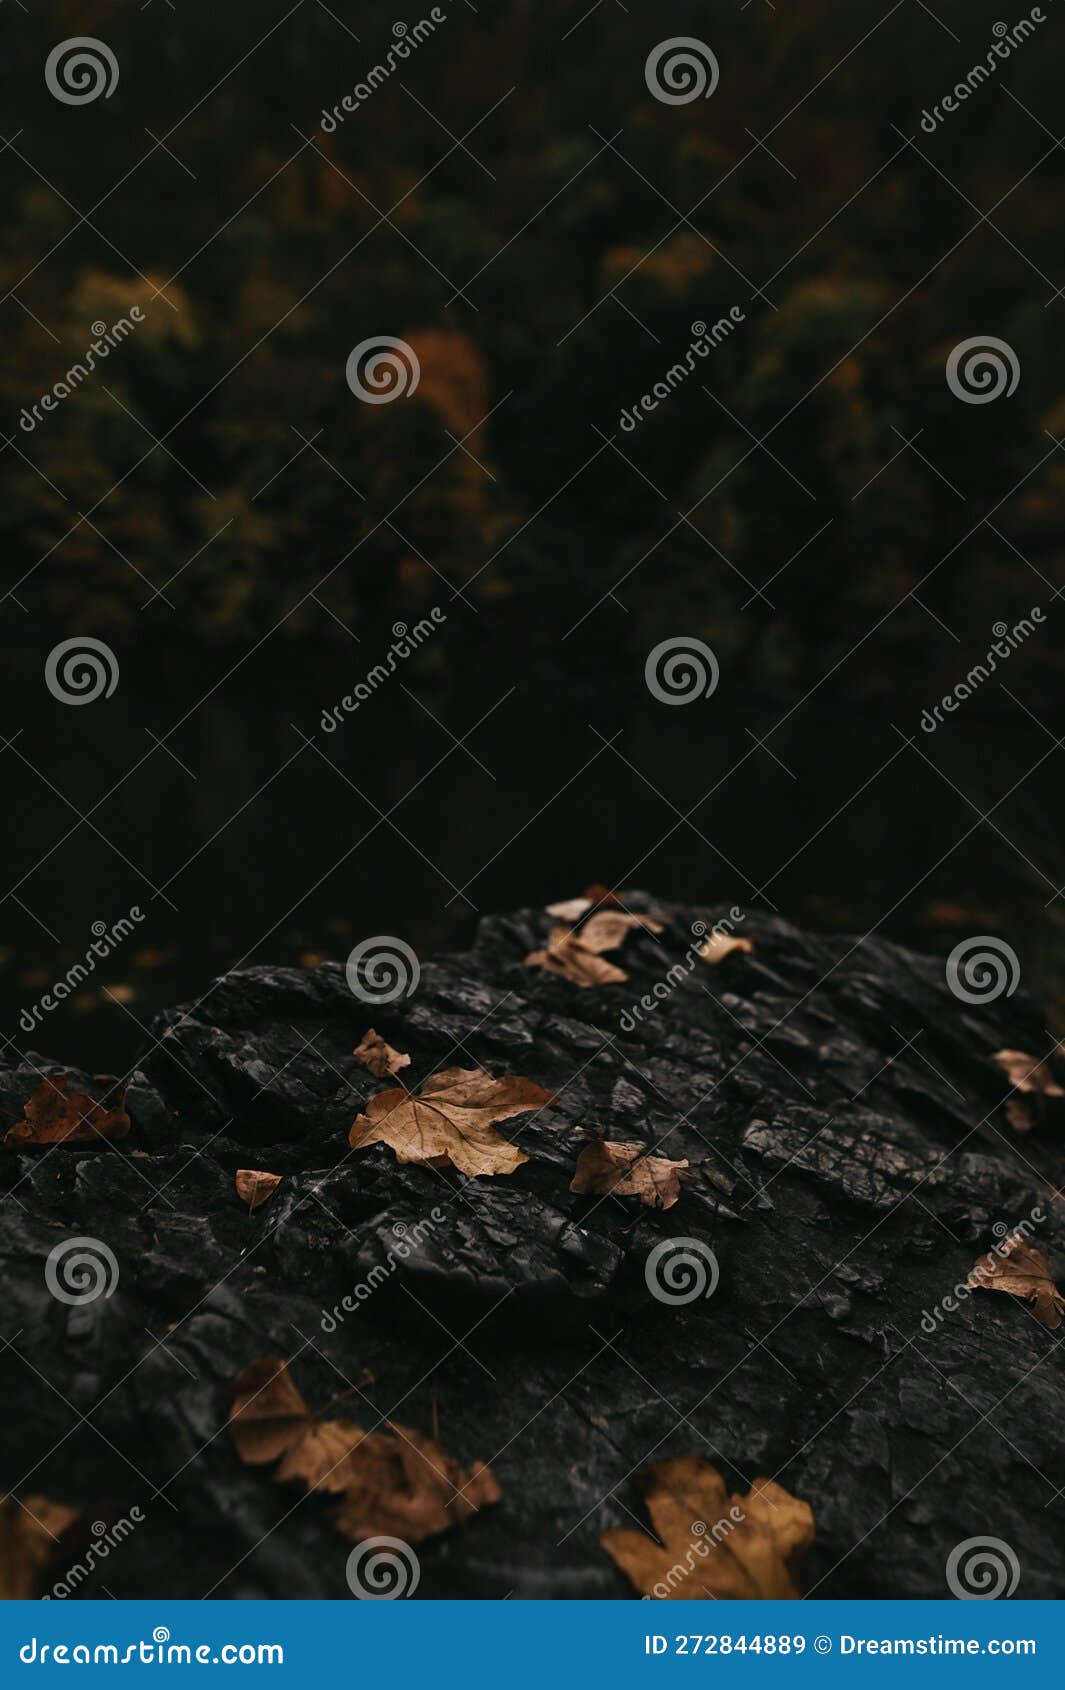 autumn fallen leaves on rocks